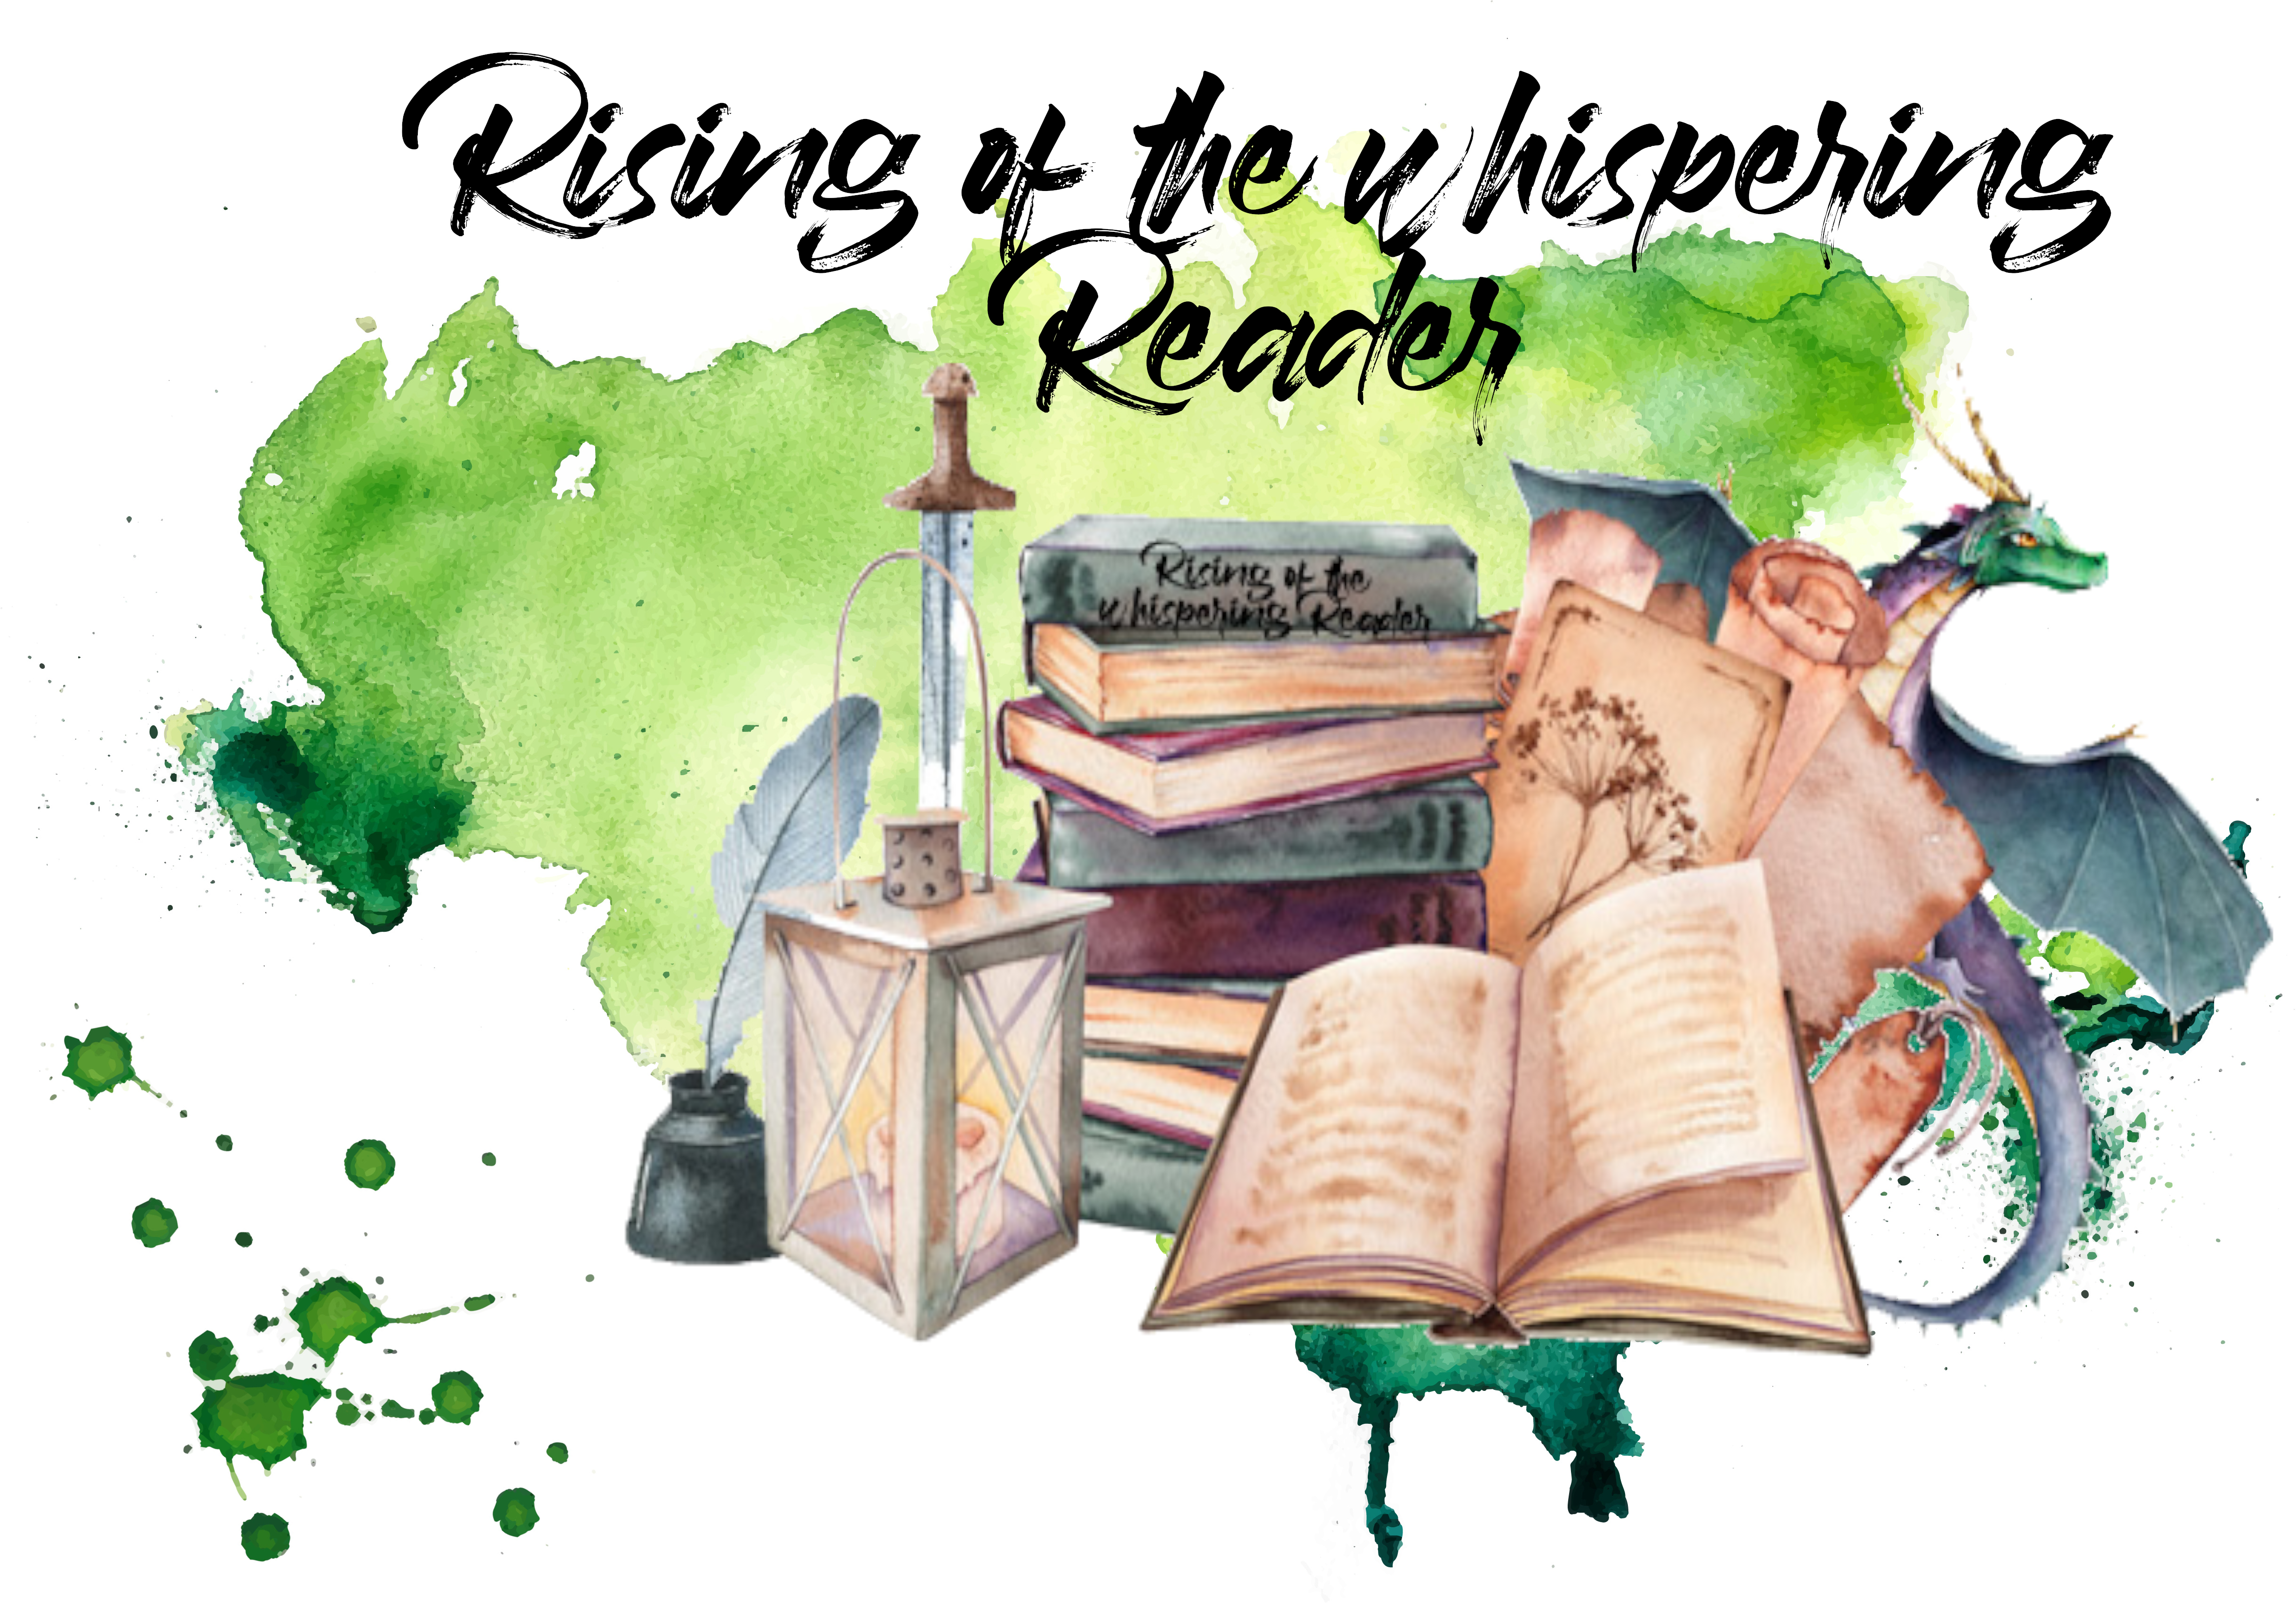 Mein Fortschritt – Rising of the whispering Reader